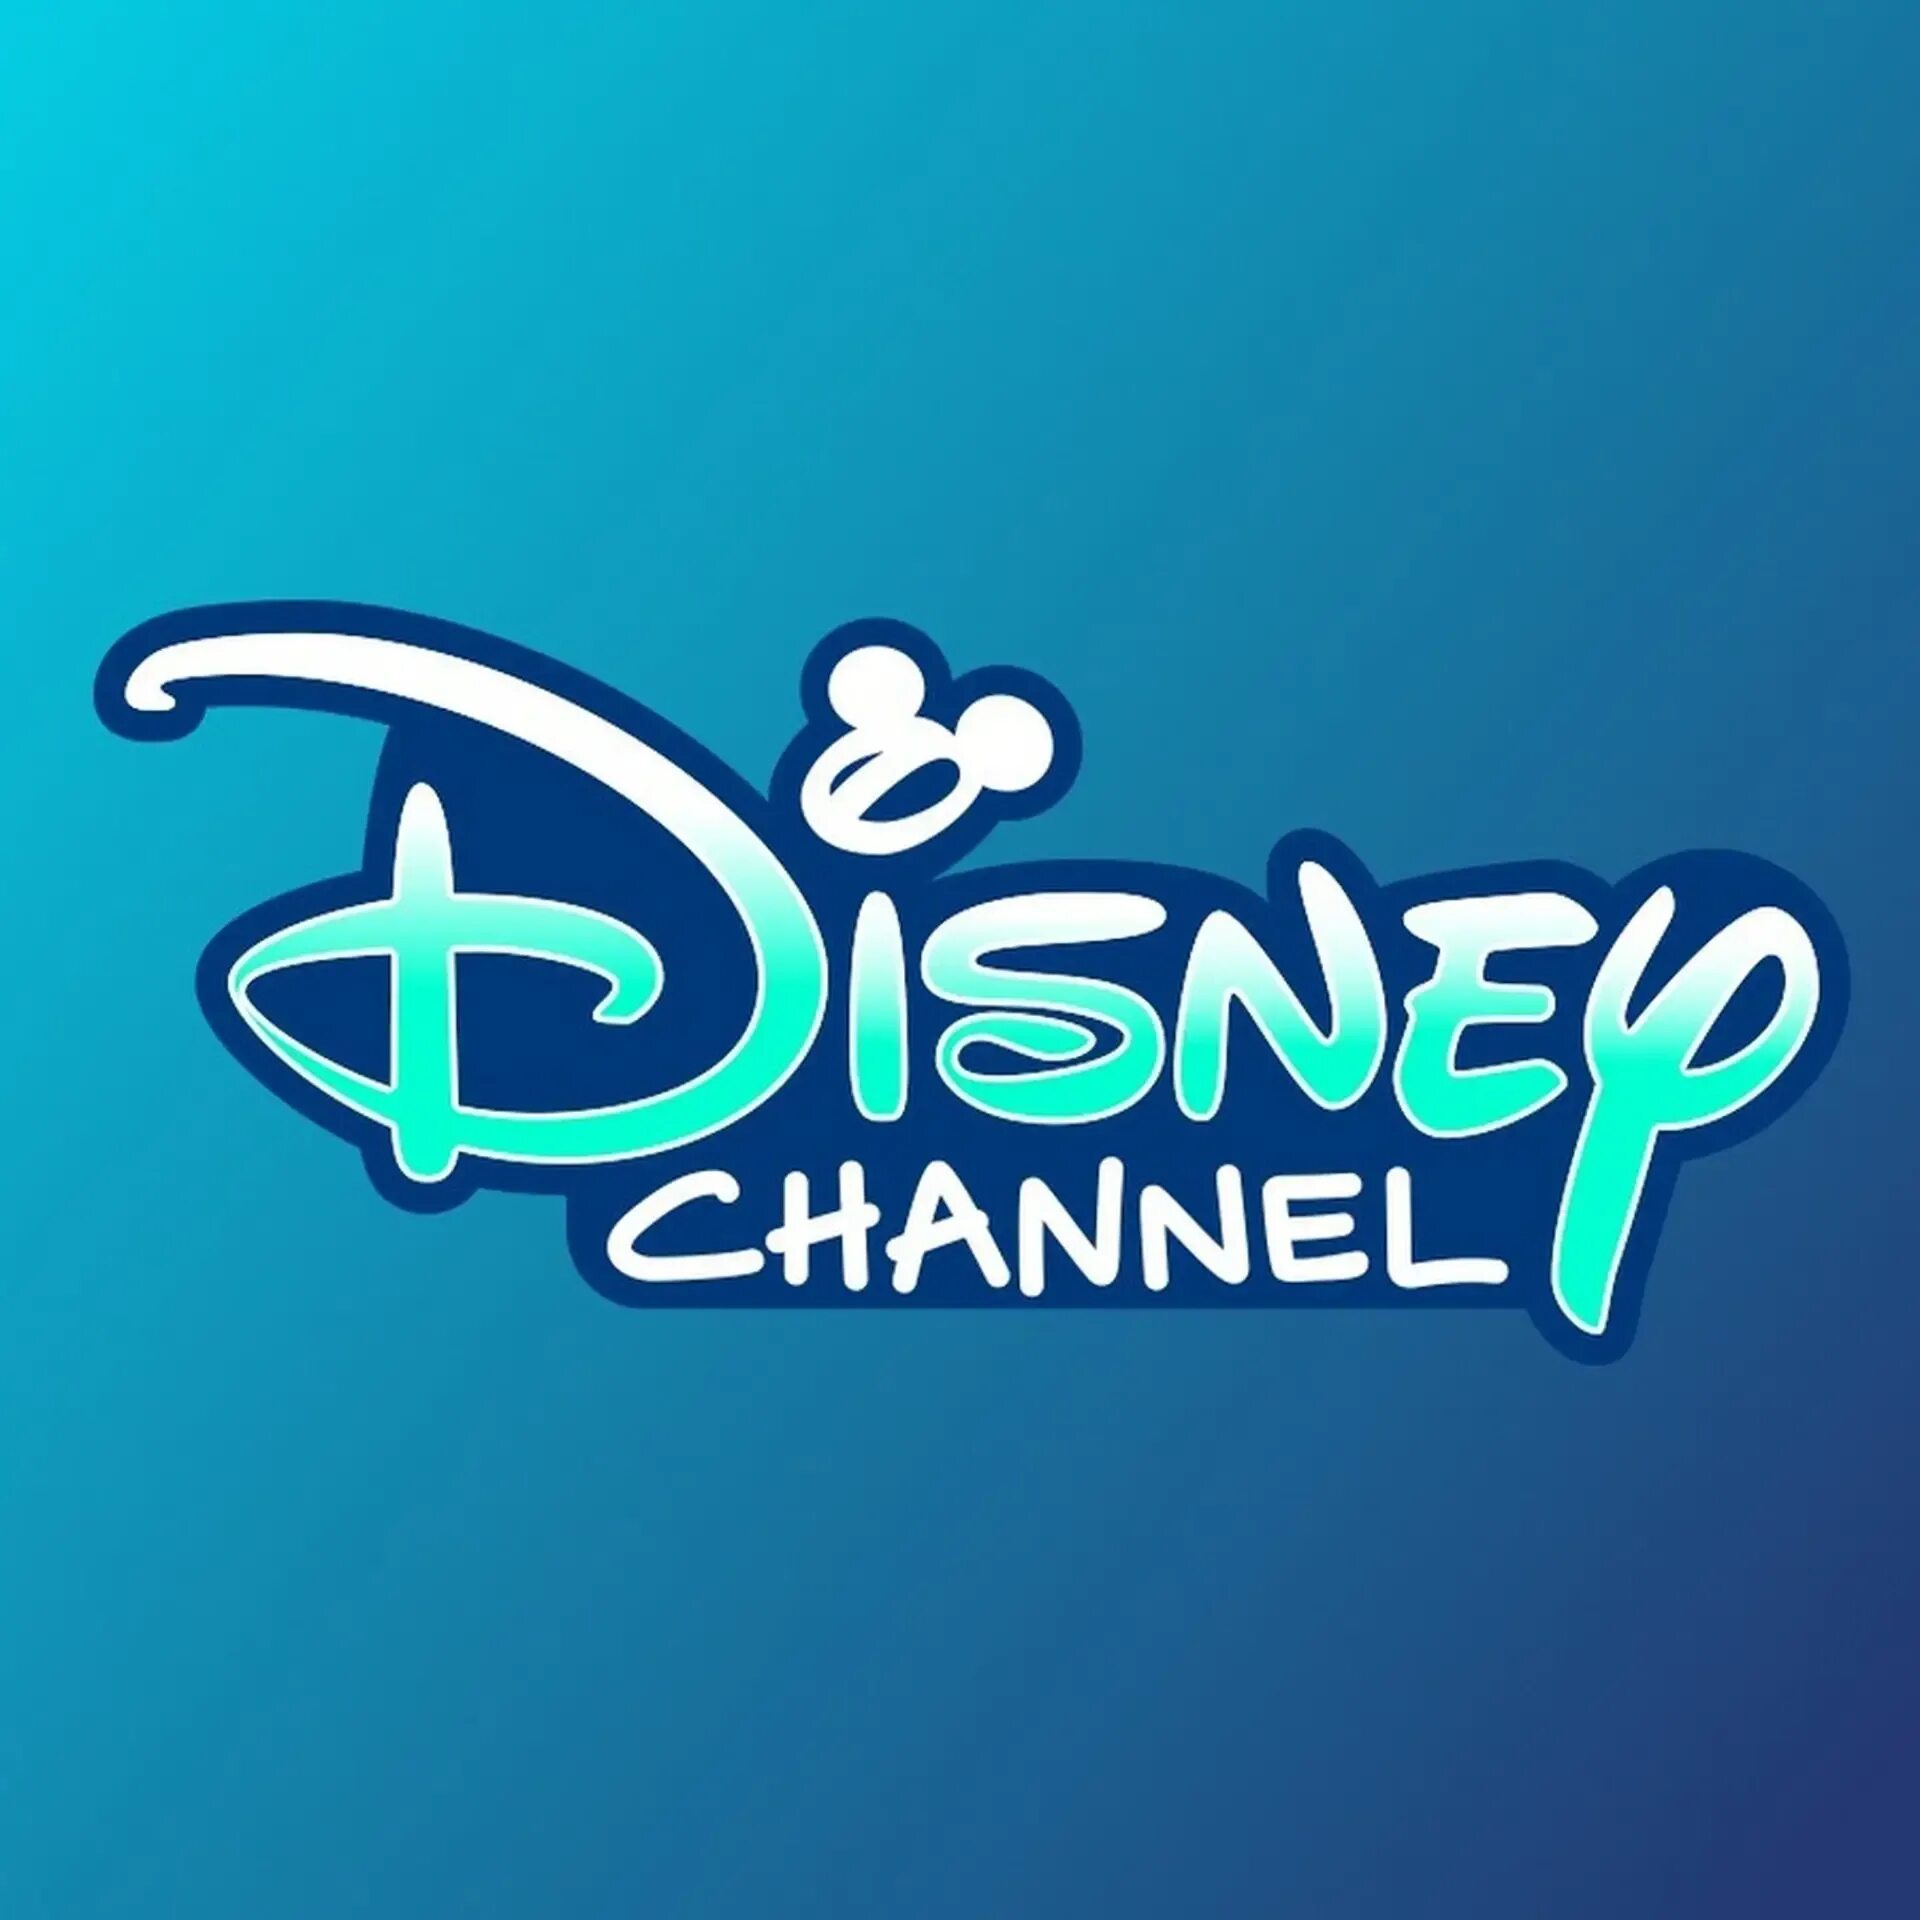 Канал дисней 1. Канал Дисней. Дисней логотип. Дисней значок канала. Логотип телеканала канал Disney.